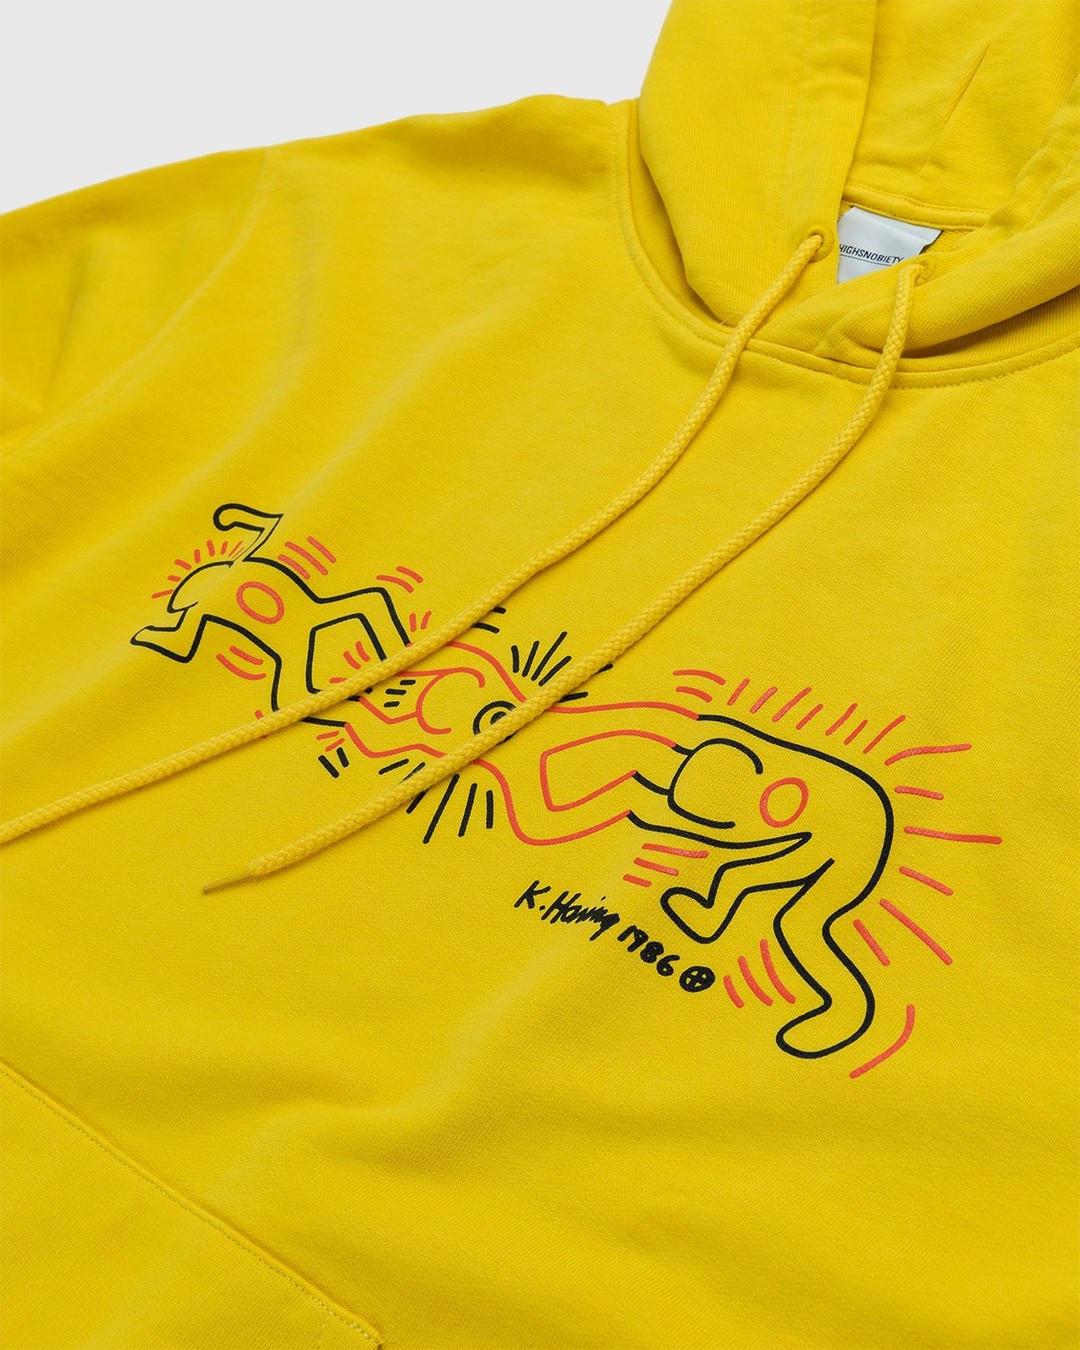 Highsnobiety – Keith Haring Hoodie Yellow - Hoodies - Yellow - Image 3